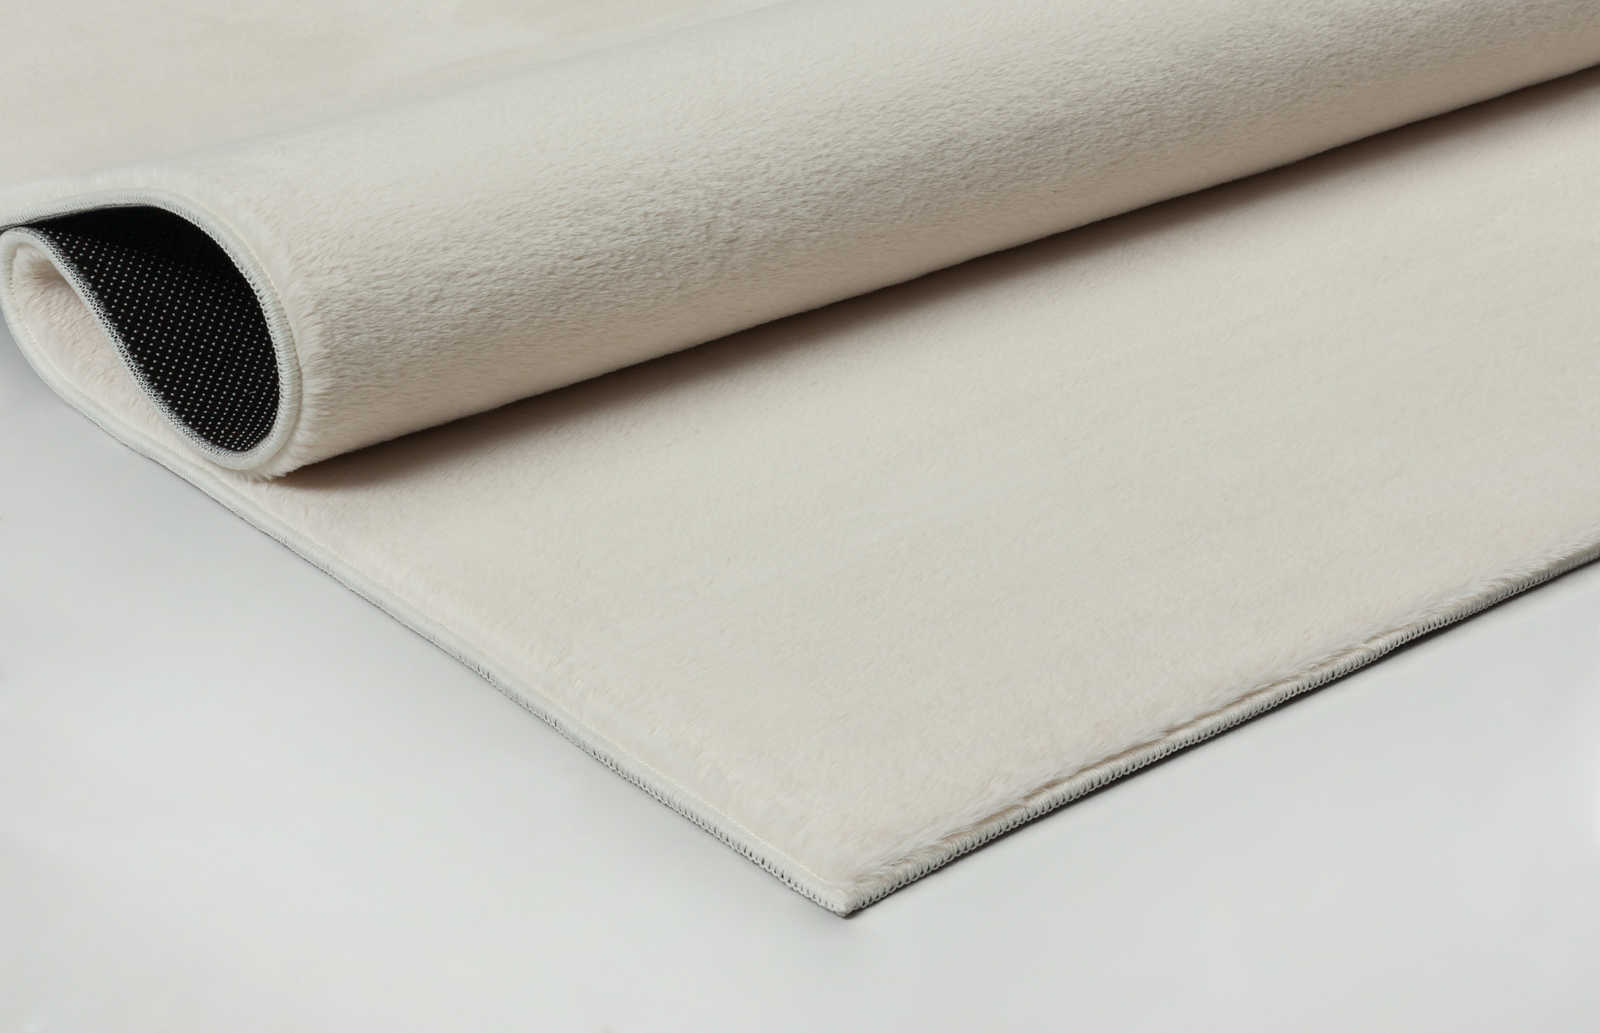             Zacht hoogpolig tapijt in crème - 160 x 117 cm
        